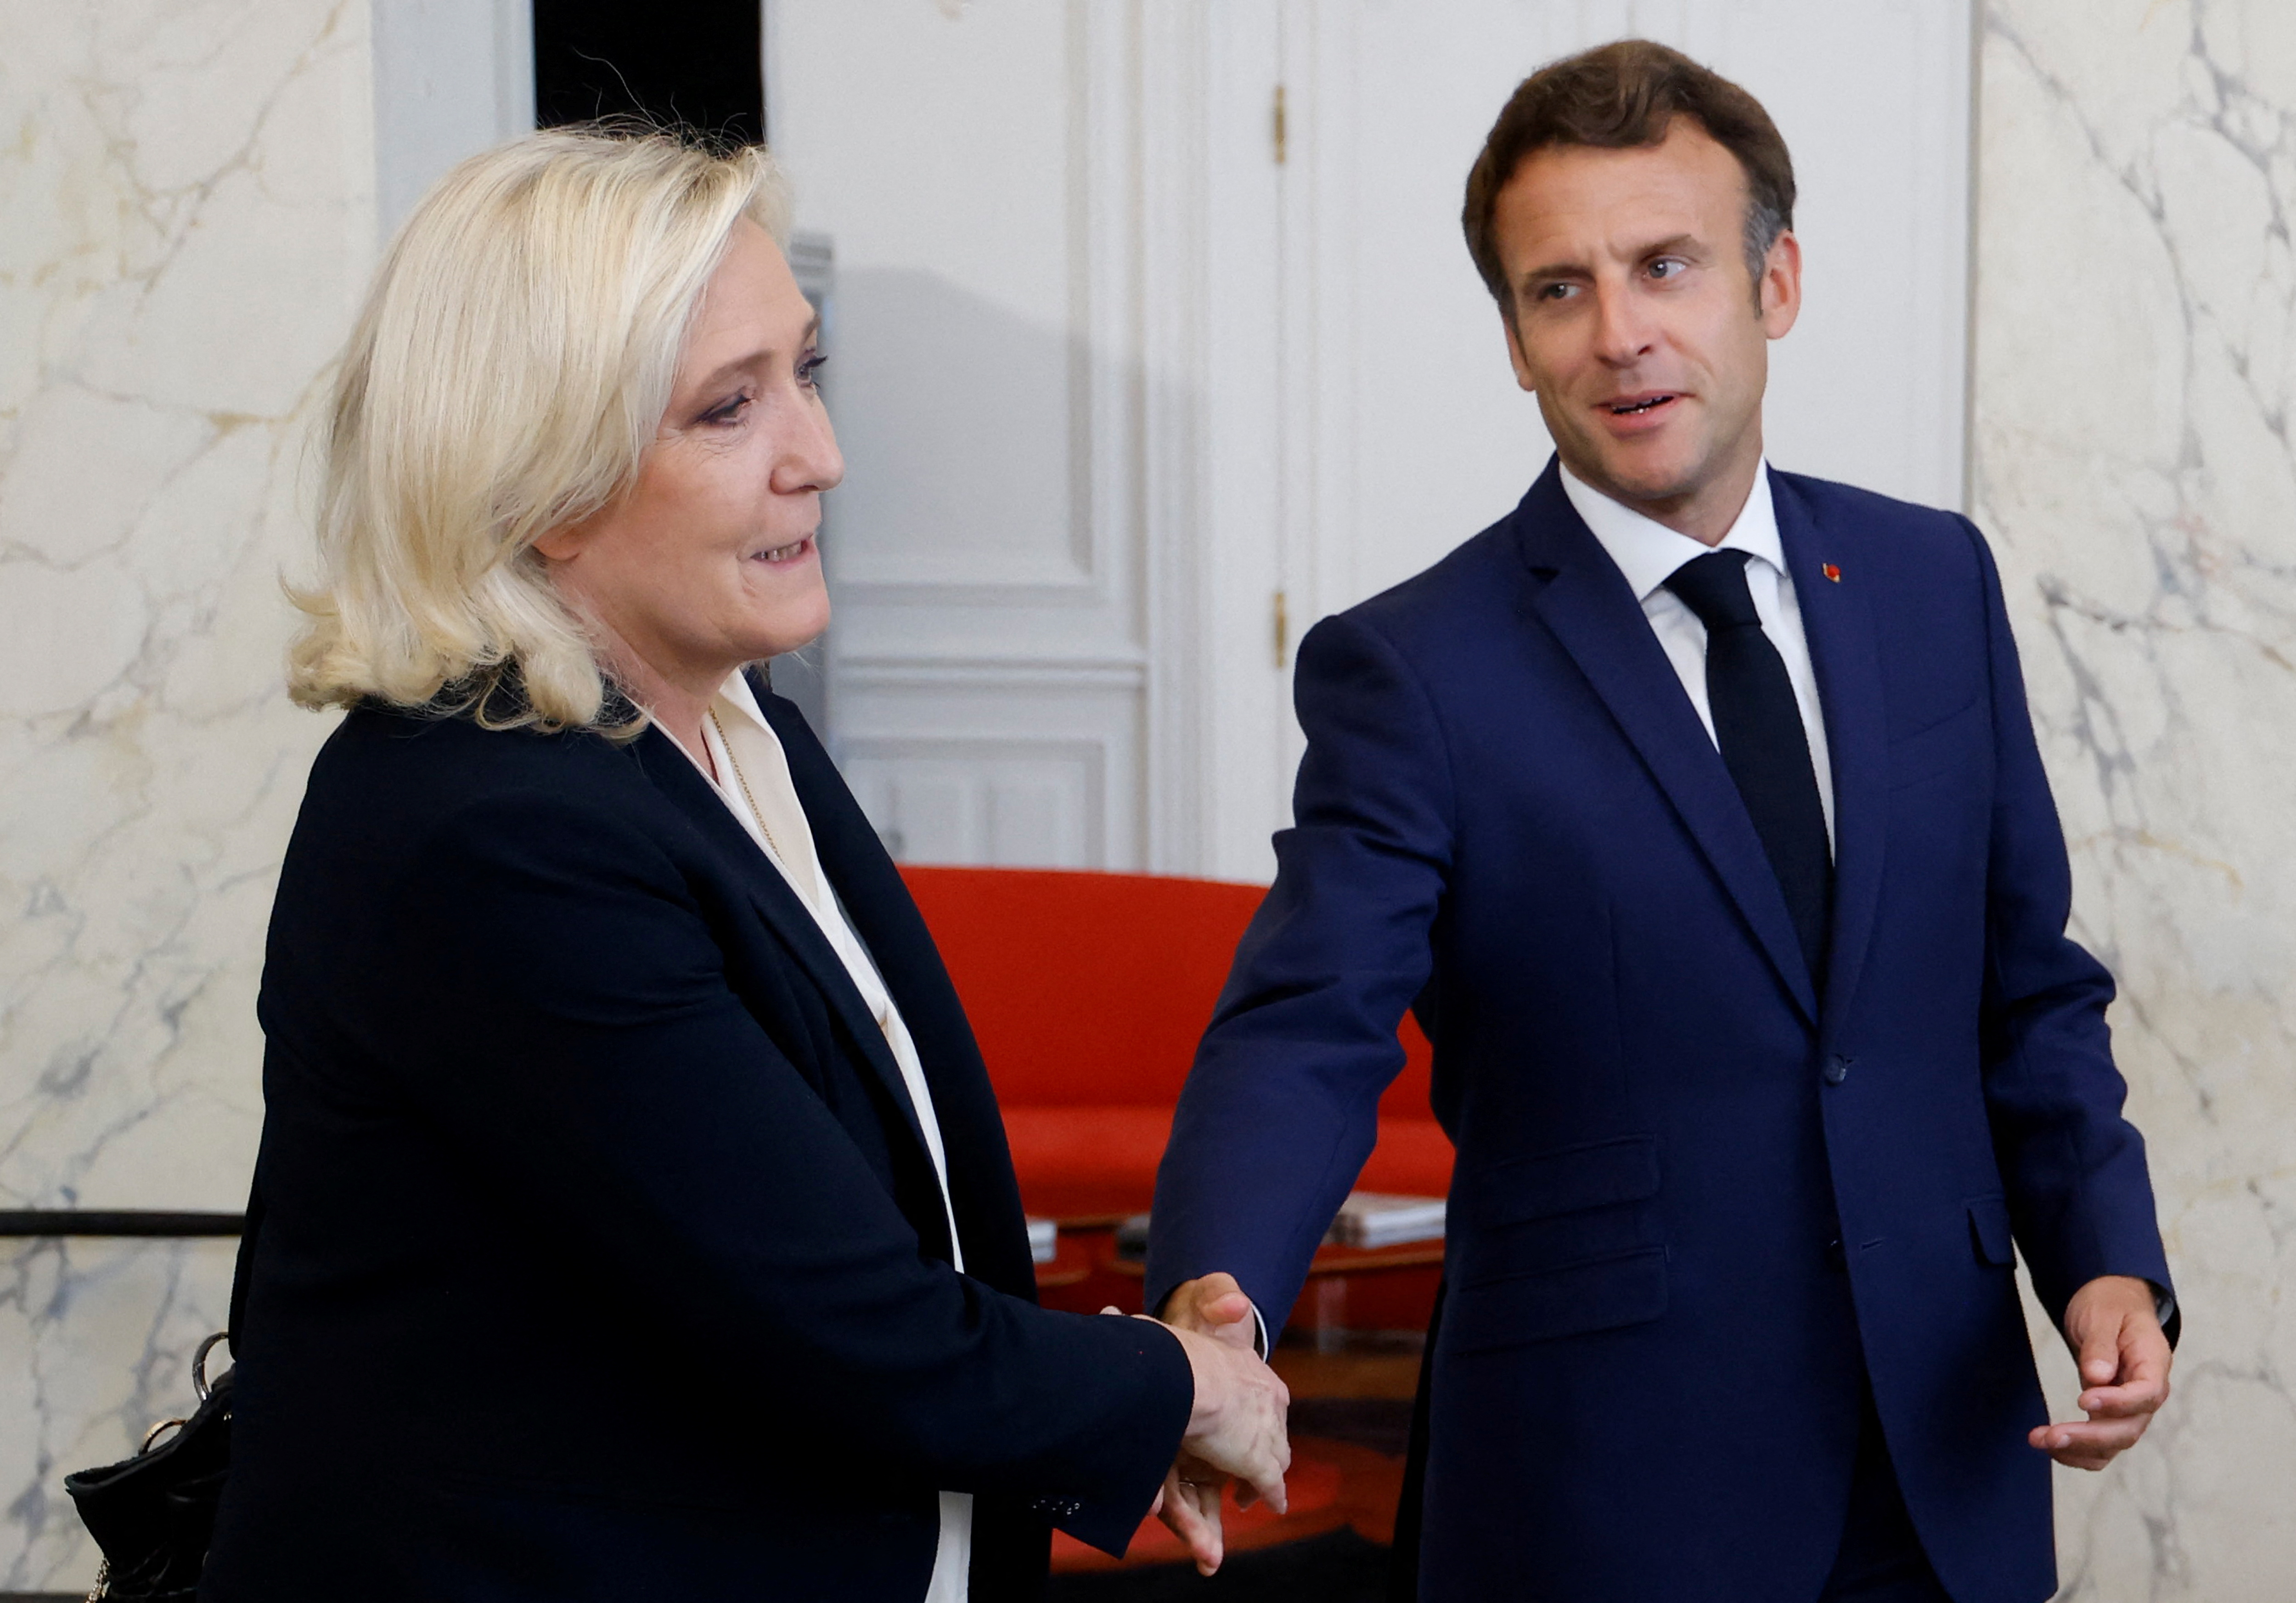 Pese a las primeras resistencias esta semana por parte de la oposición, el presidente afirmó que “Francia sabe hacer compromisos” y agregó que cree en la “buena voluntad” de los diputados electos